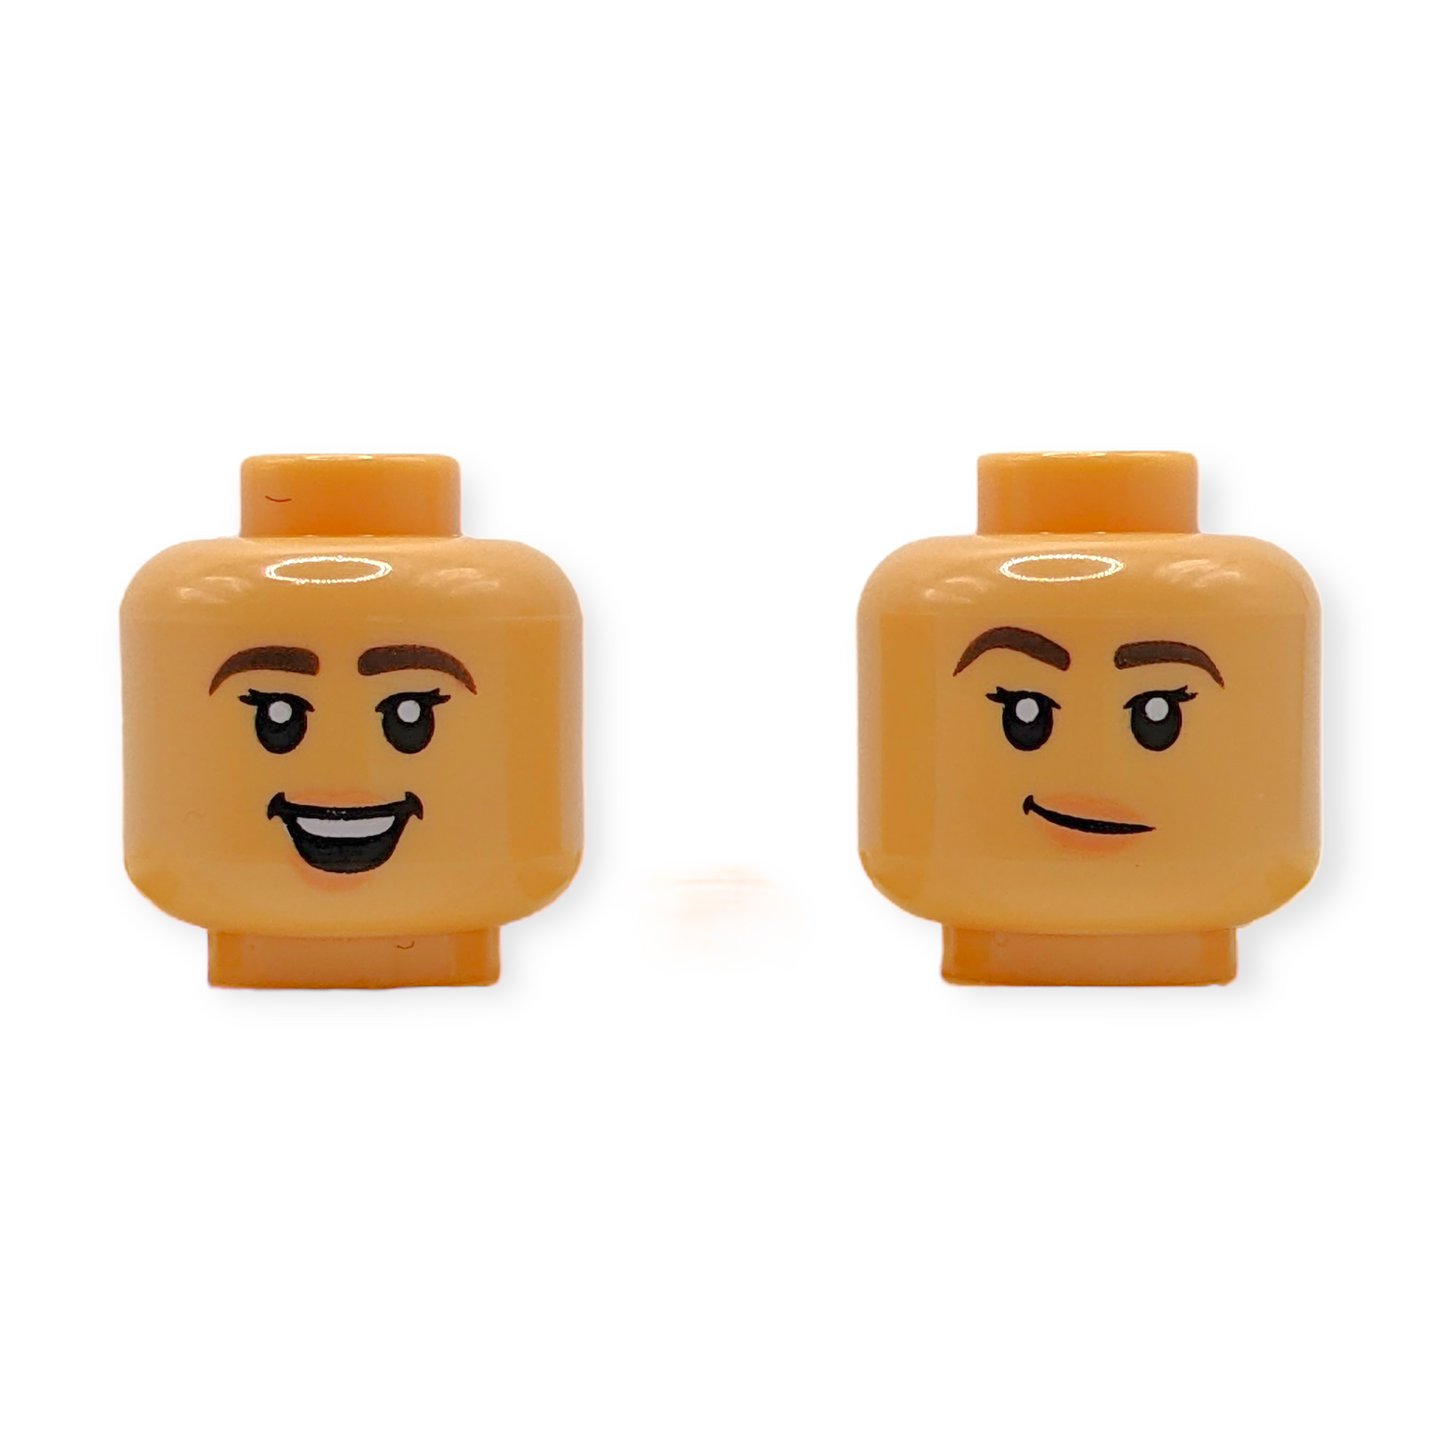 LEGO Head - 3879 Dual Sided Female Dark Brown Eyebrows